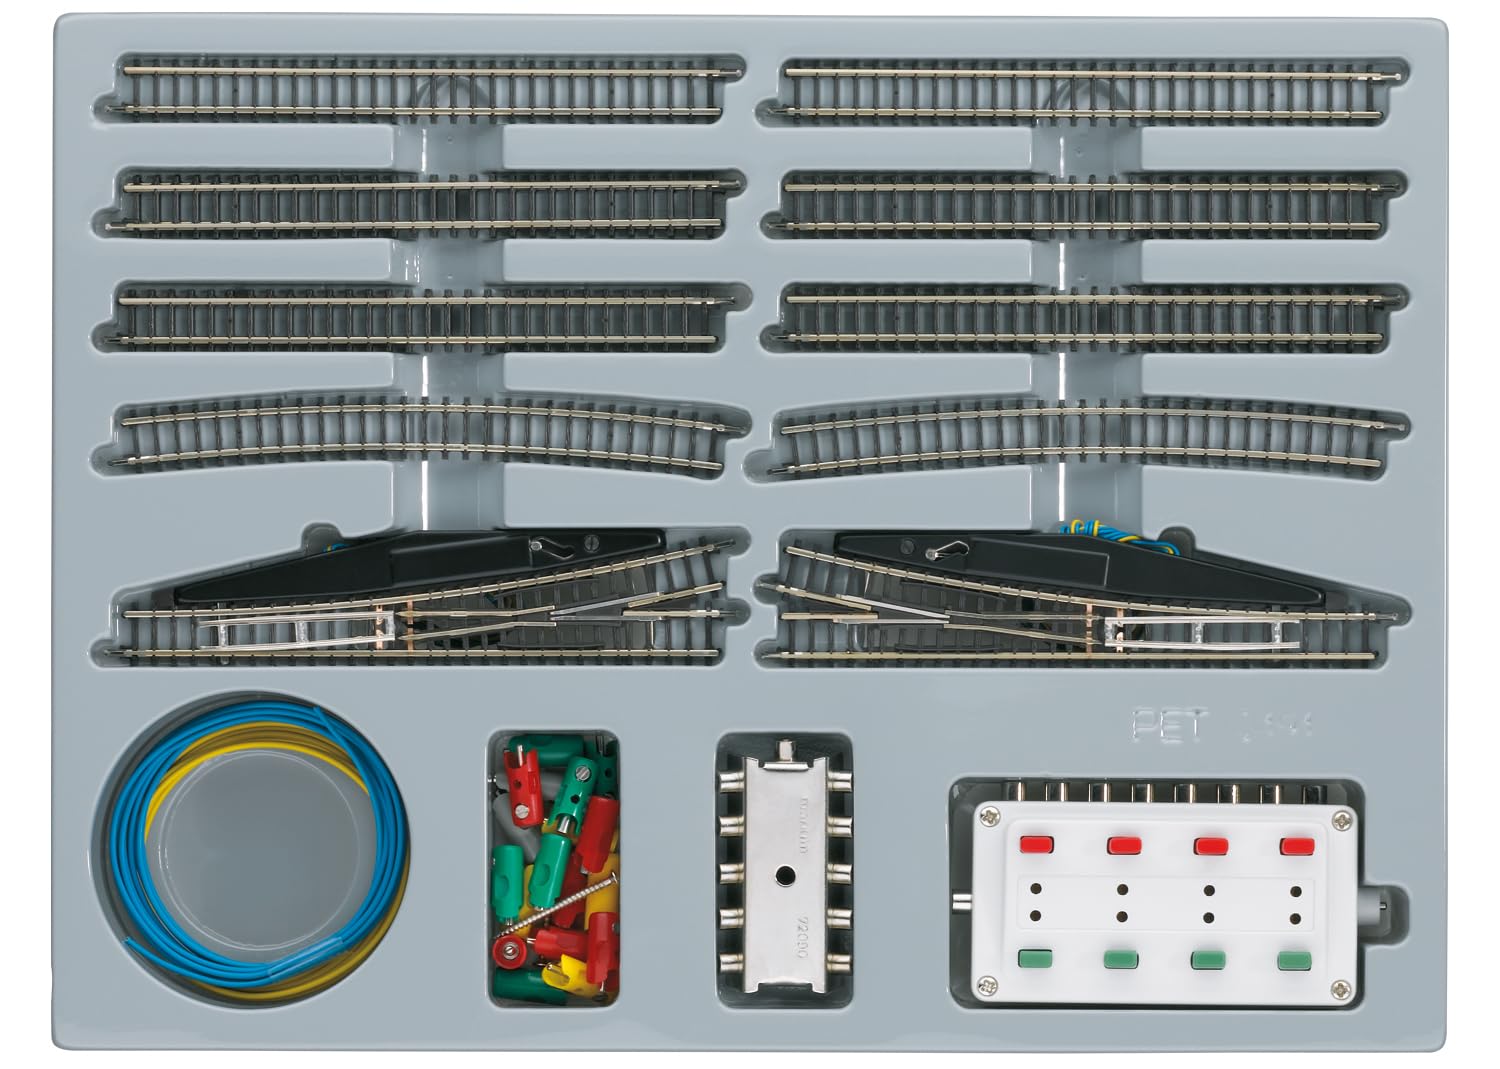 Märklin - 8191 Spur Z - Starter Set Erweiterung - Gleissystem Erweiterung - Detaillierte Ausführung - Ideal für Modellbahnliebhaber - Maßstab 1:220